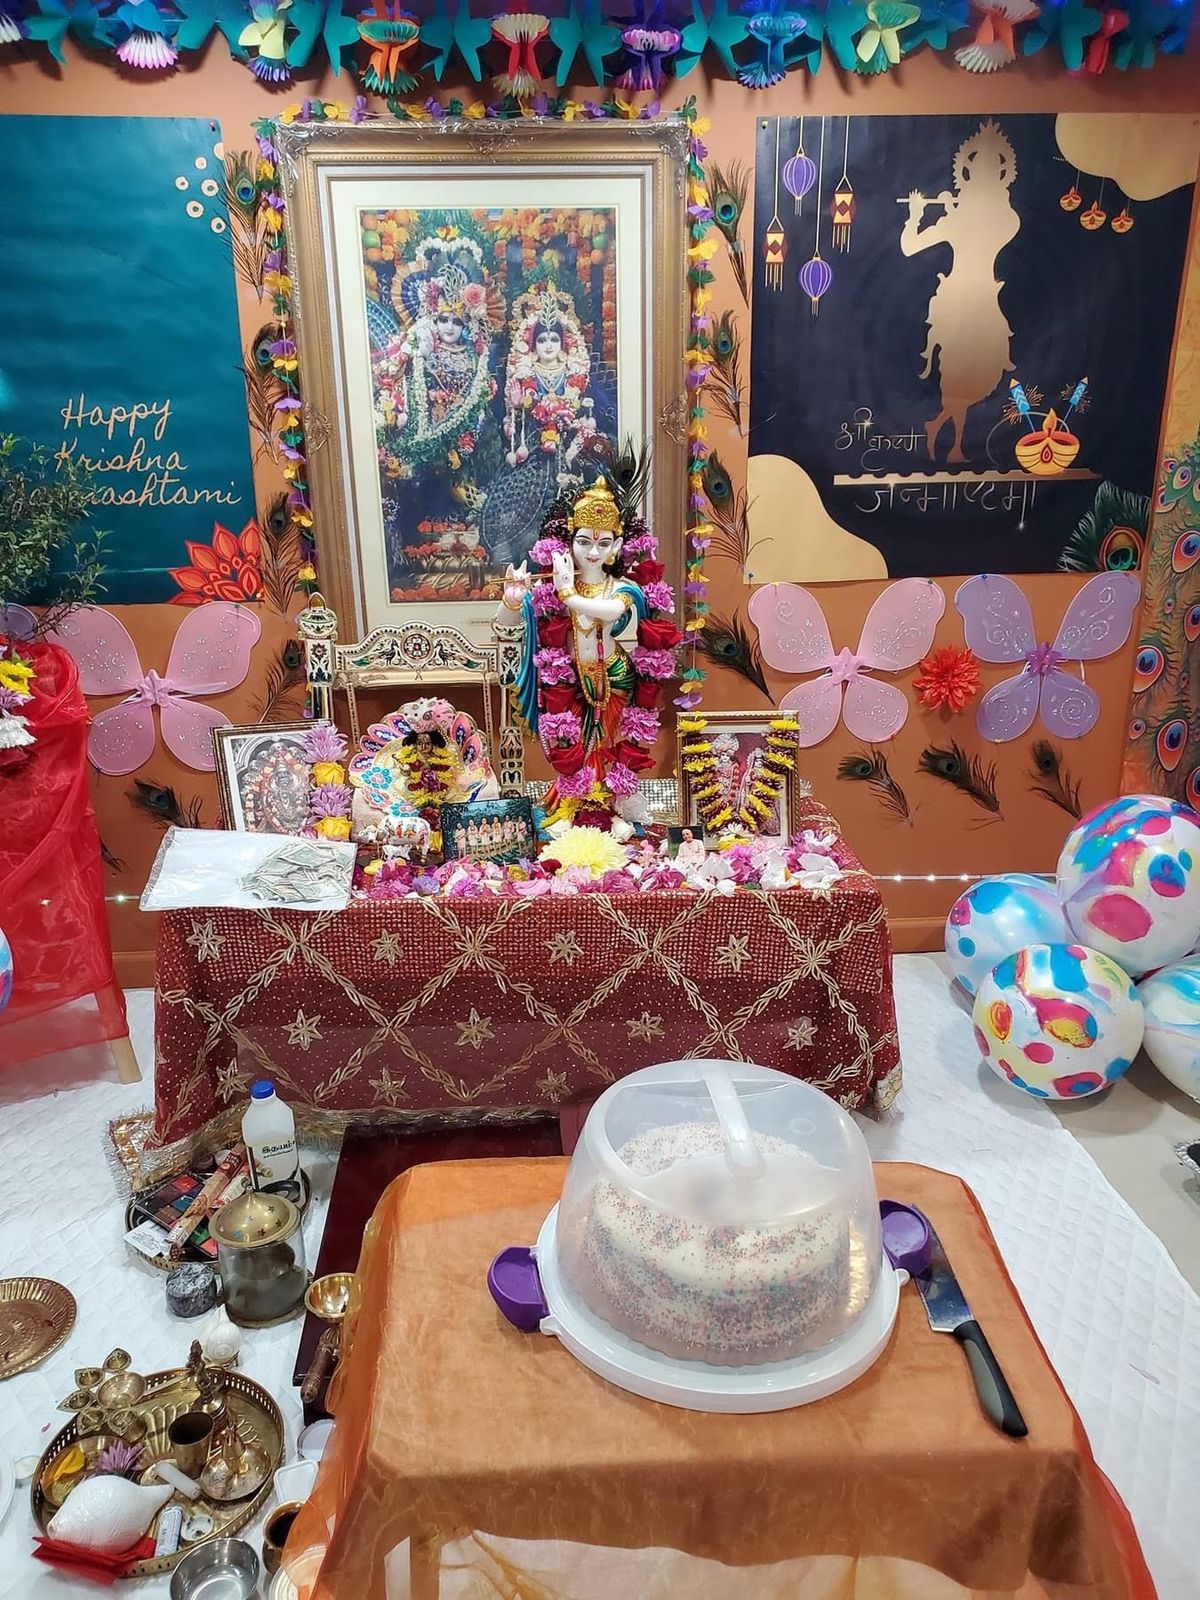 আটলানটিক সিটিতে সমপ্রীতির বন্ধনে জন্মাষ্টমী উদযাপিত Janmashti Celebrated in AC with Bond of Love